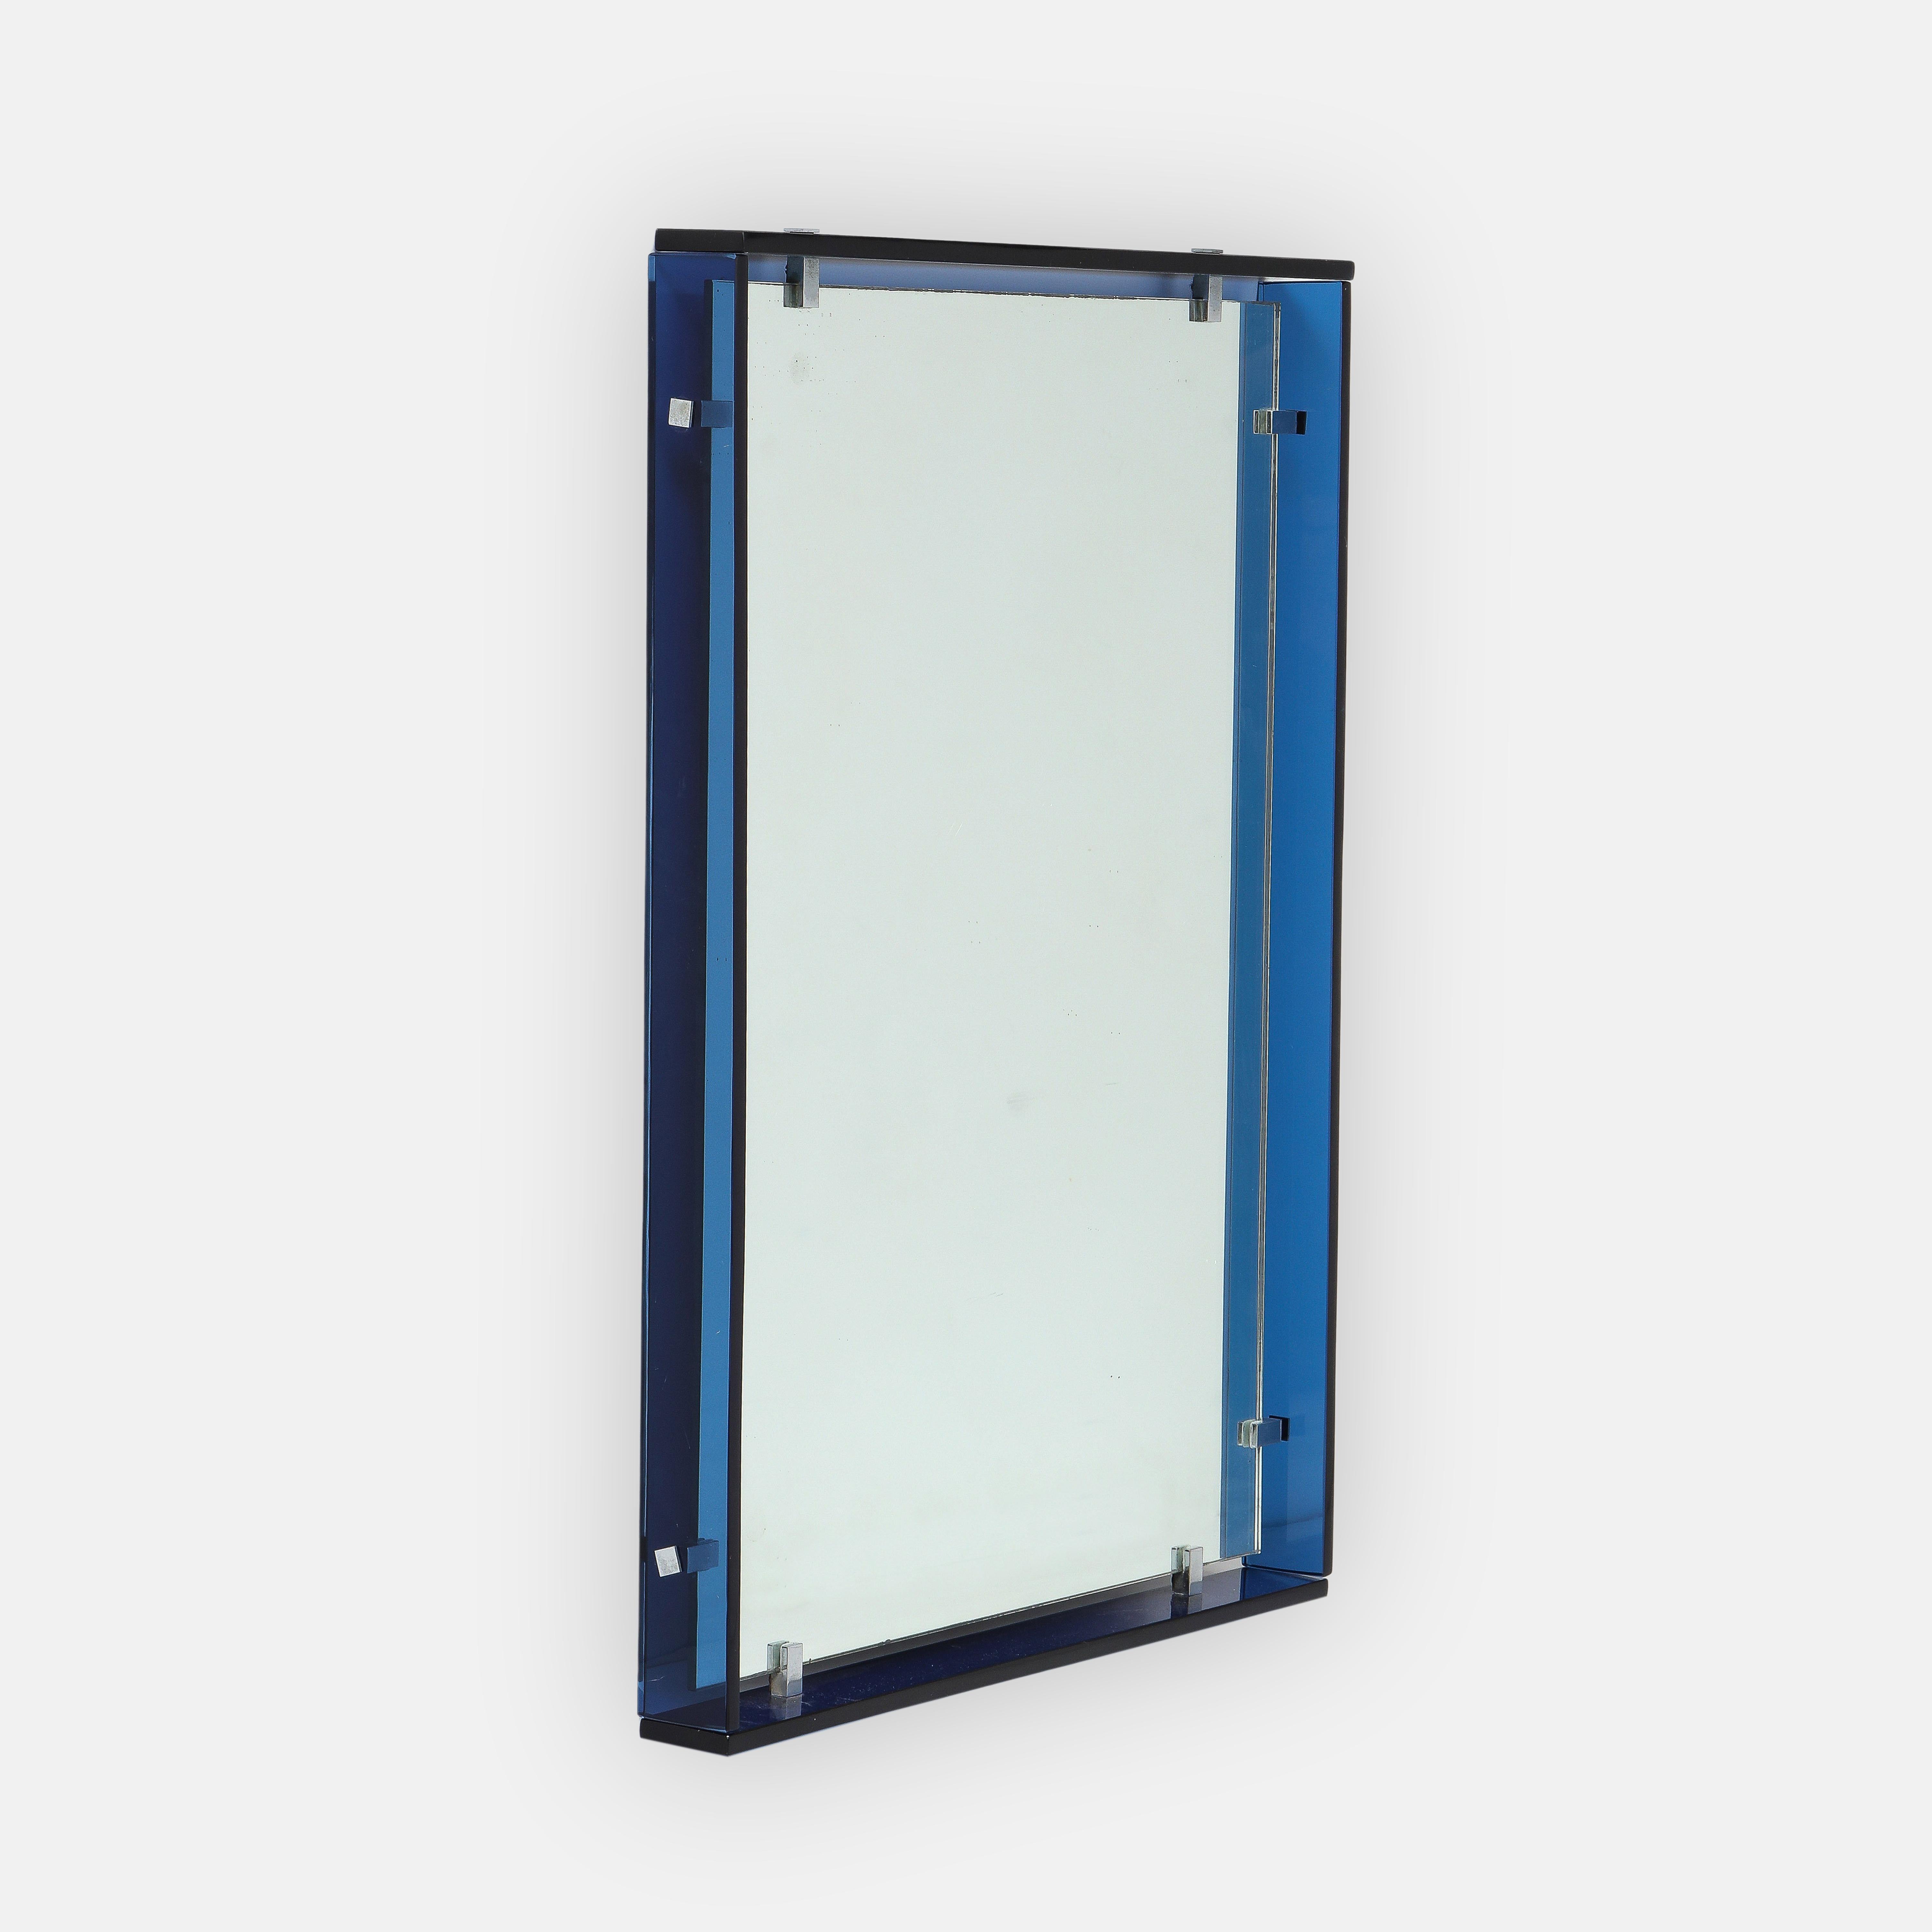 Max Ingrand für Fontana Arte modernistischer rechteckiger Spiegel, Modell 2014, bestehend aus dicken kobaltblauen Streifen aus Kristallglas, die das ursprüngliche Spiegelglas umgeben, mit vernickelten Messingklammern, Italien, 1960er Jahre. Dieses